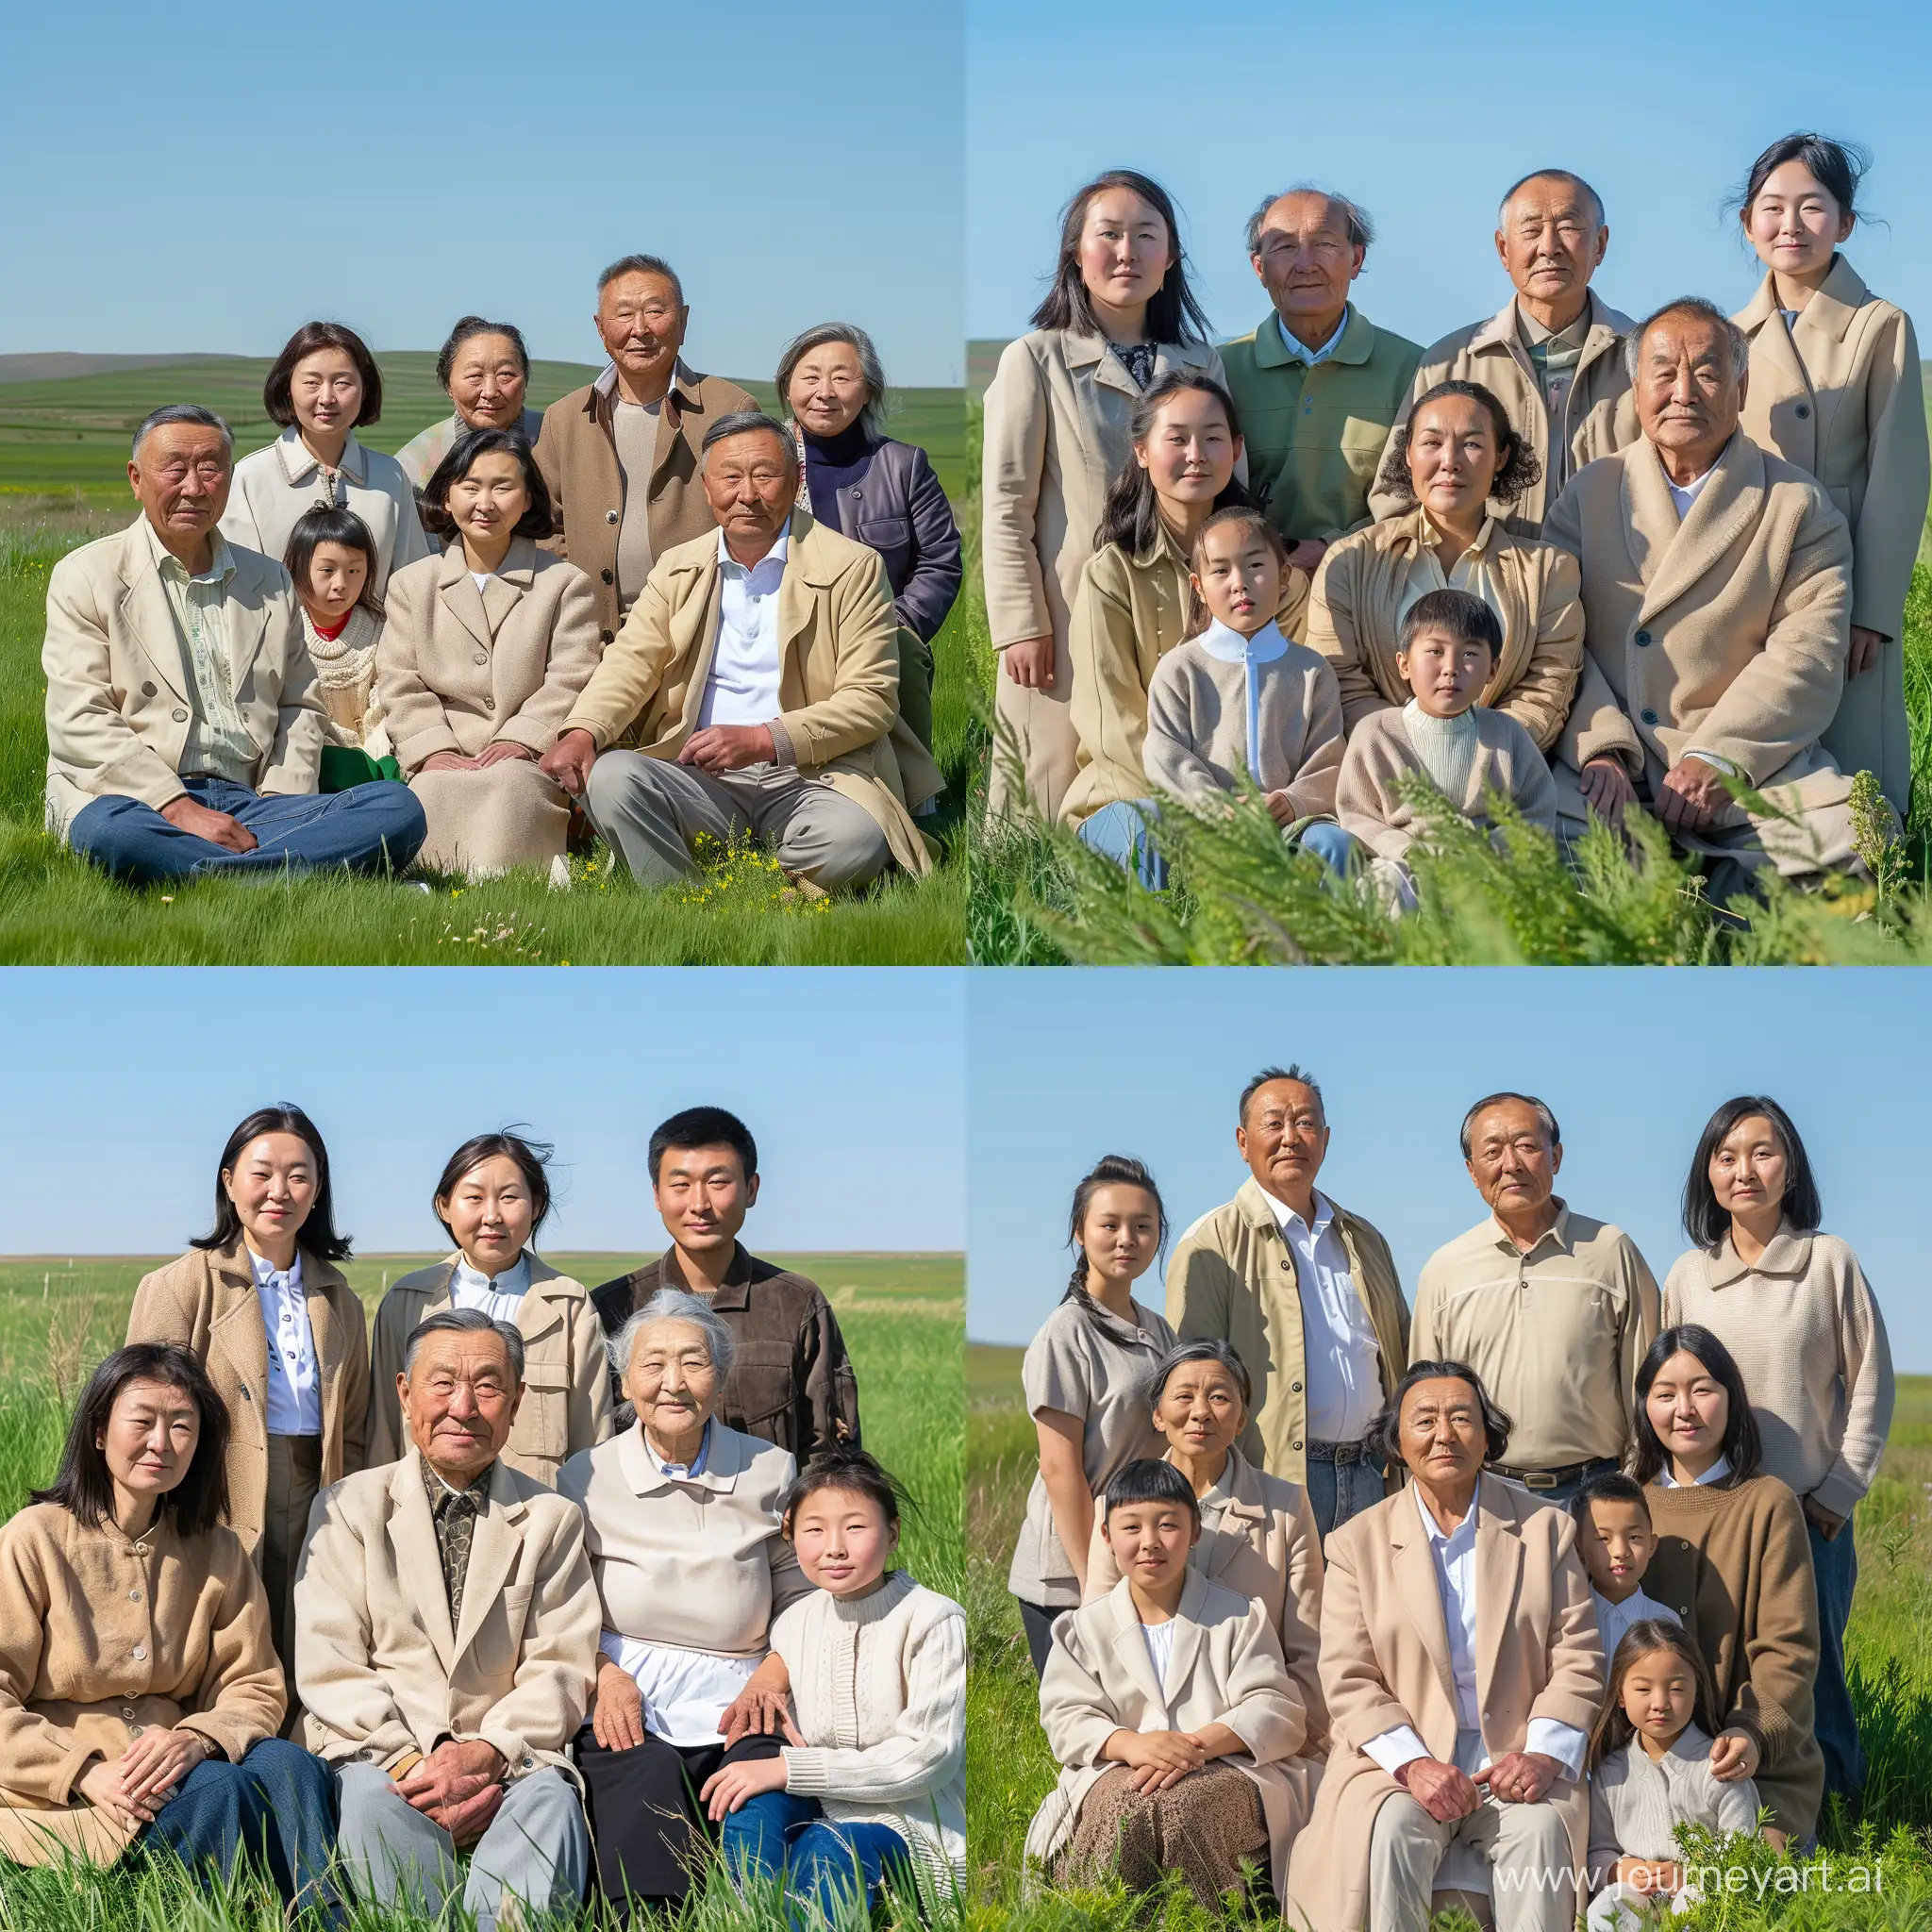 Multigenerational-Family-Portrait-in-Vibrant-Green-Field-under-Clear-Blue-Sky